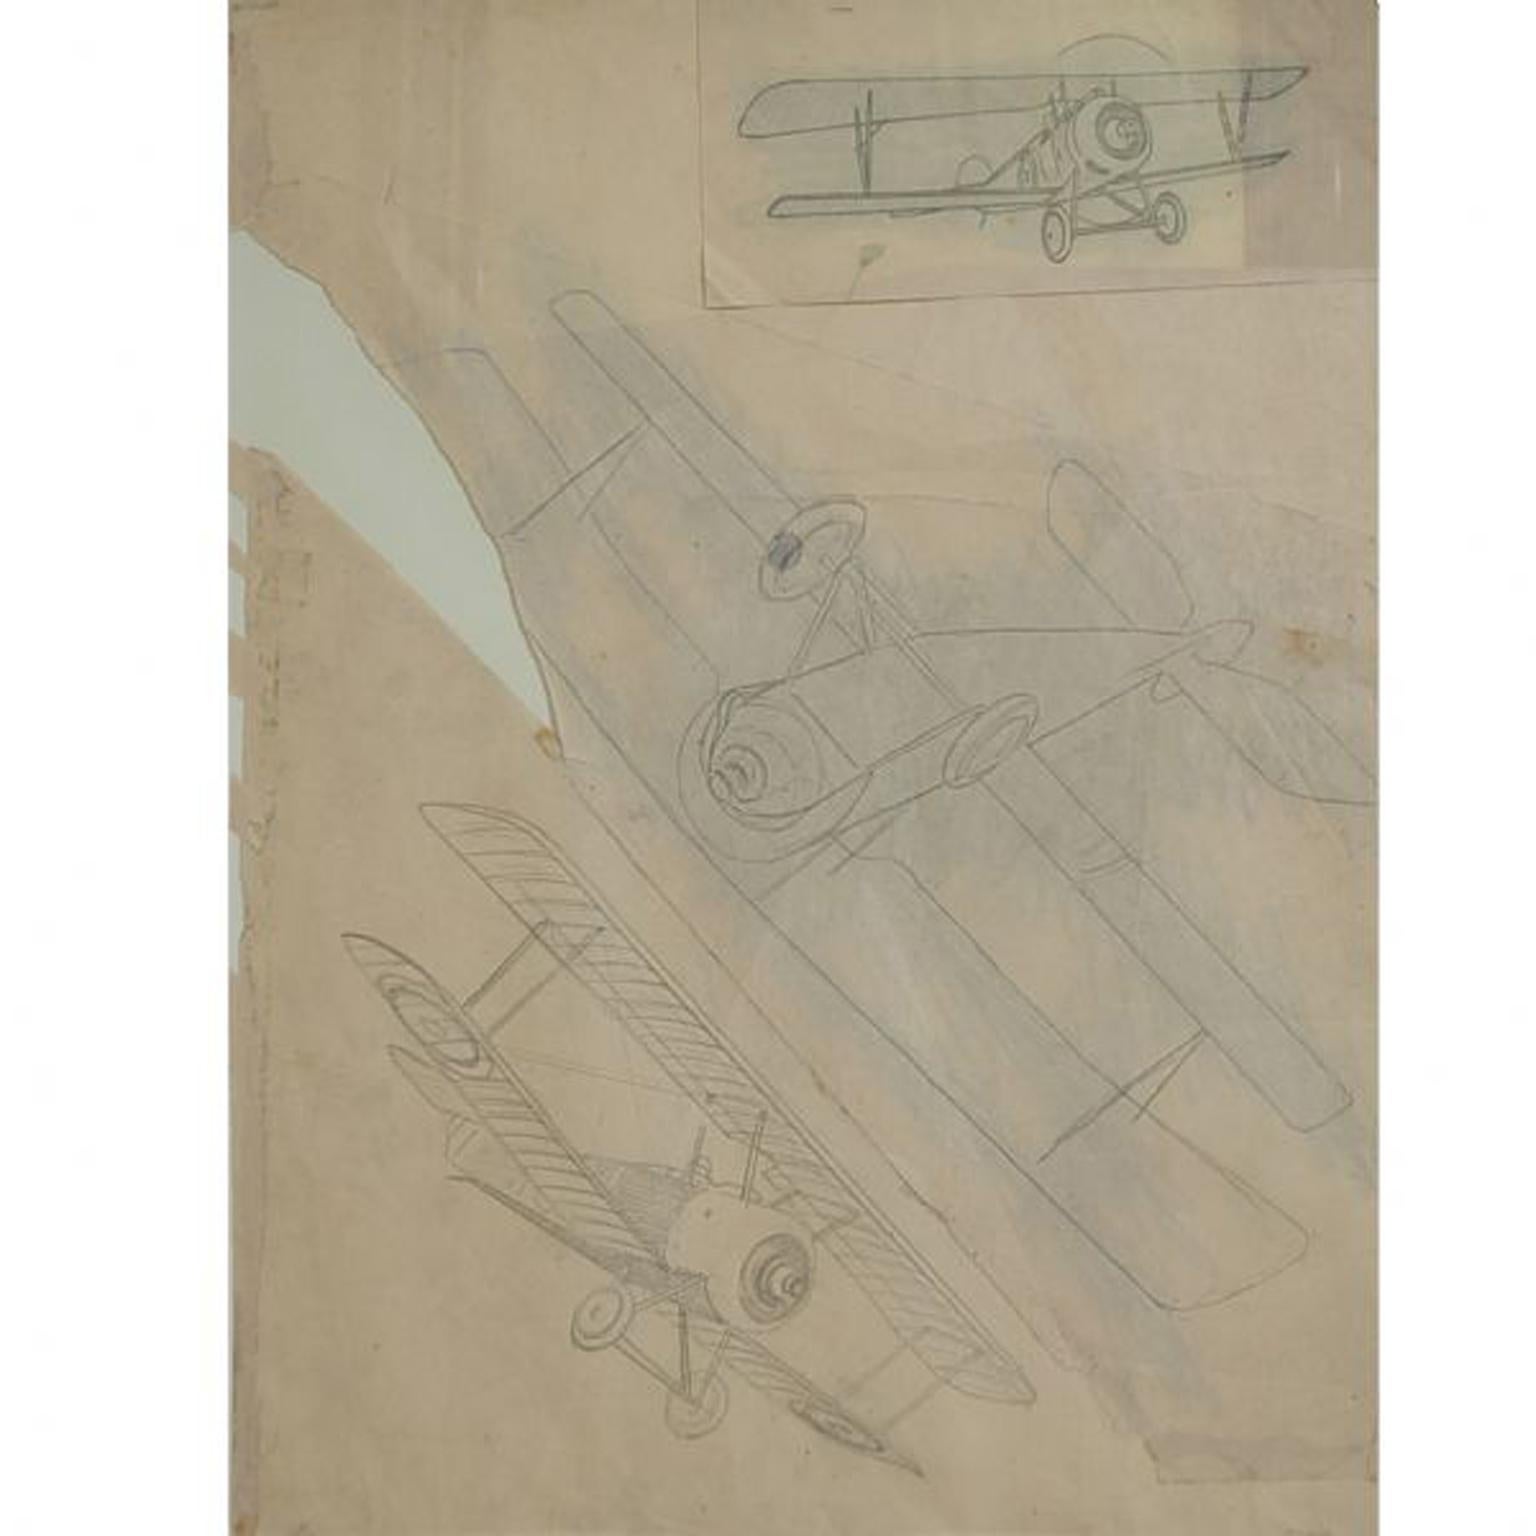 Bleistiftzeichnung von Riccardo Cavigioli aus den frühen 1920er Jahren, die drei einsitzige Doppeldecker-Flugzeuge darstellt. Rechts= zwei einsitzige Doppeldecker-Jagdflugzeuge Nieuport 11 Bebe von 1915. Links (niedrig)= einsitziger Doppeldecker